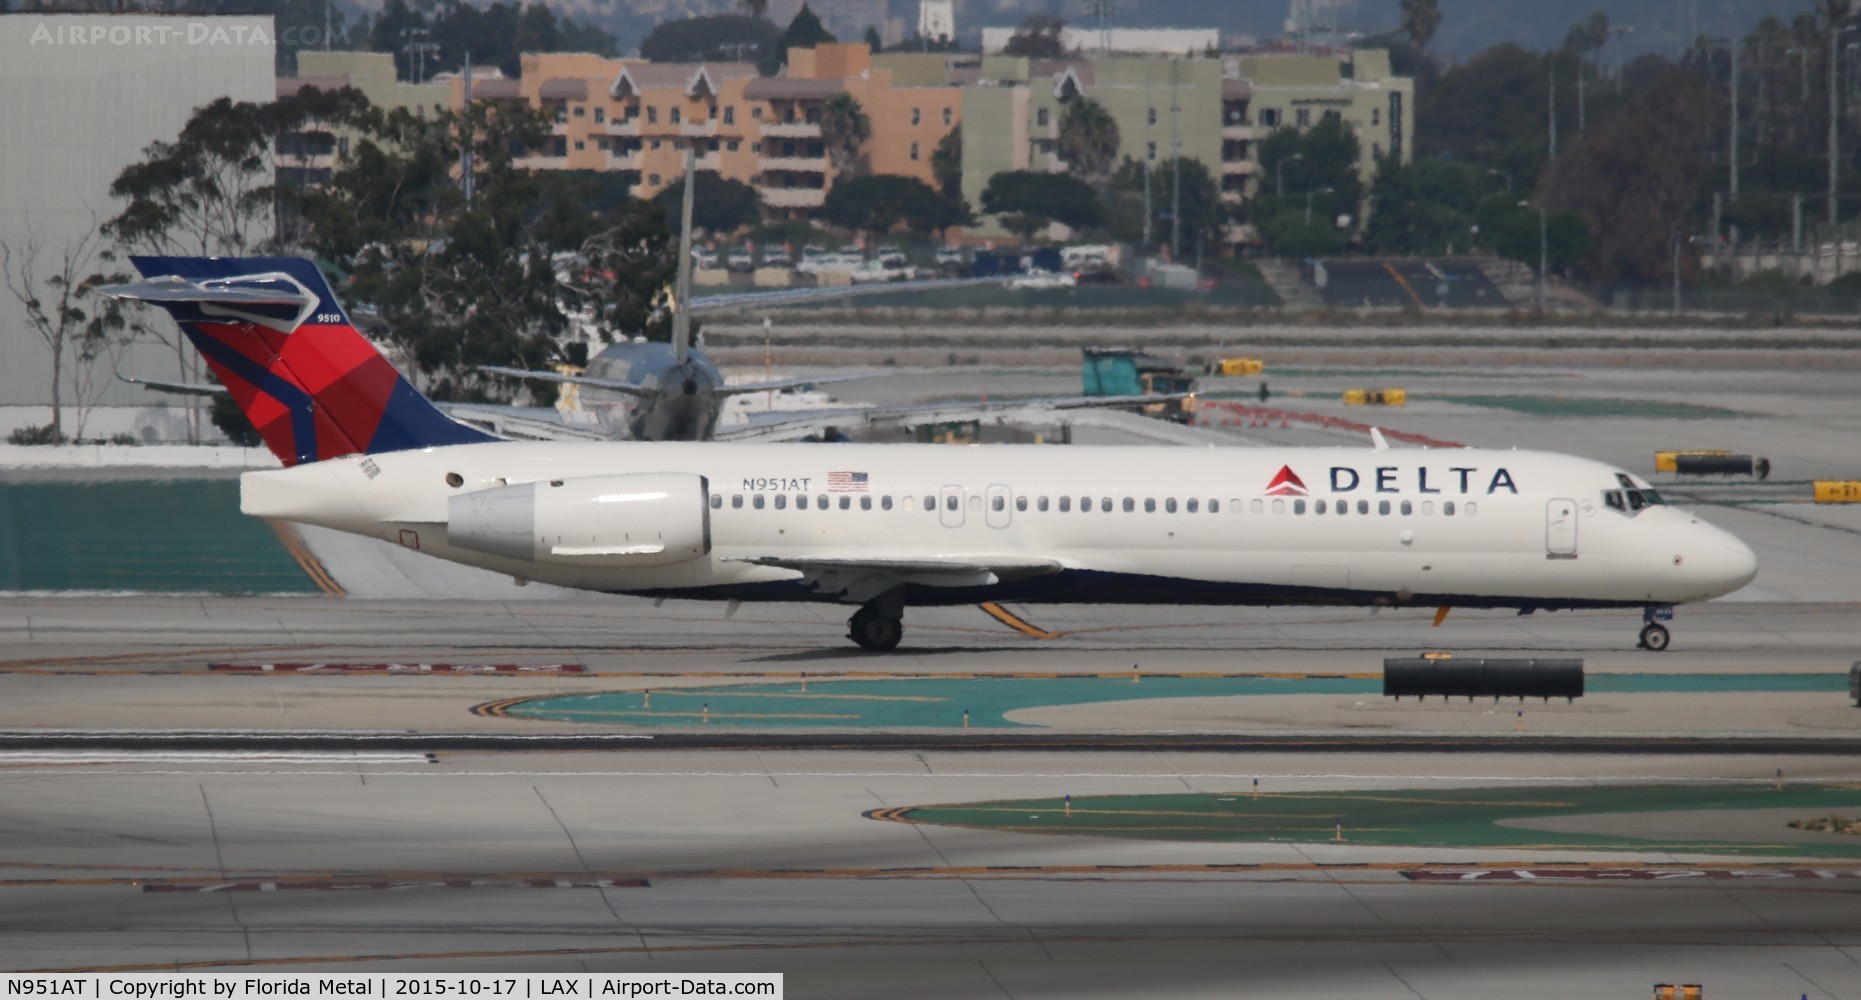 N951AT, 2000 Boeing 717-200 C/N 55013, Delta